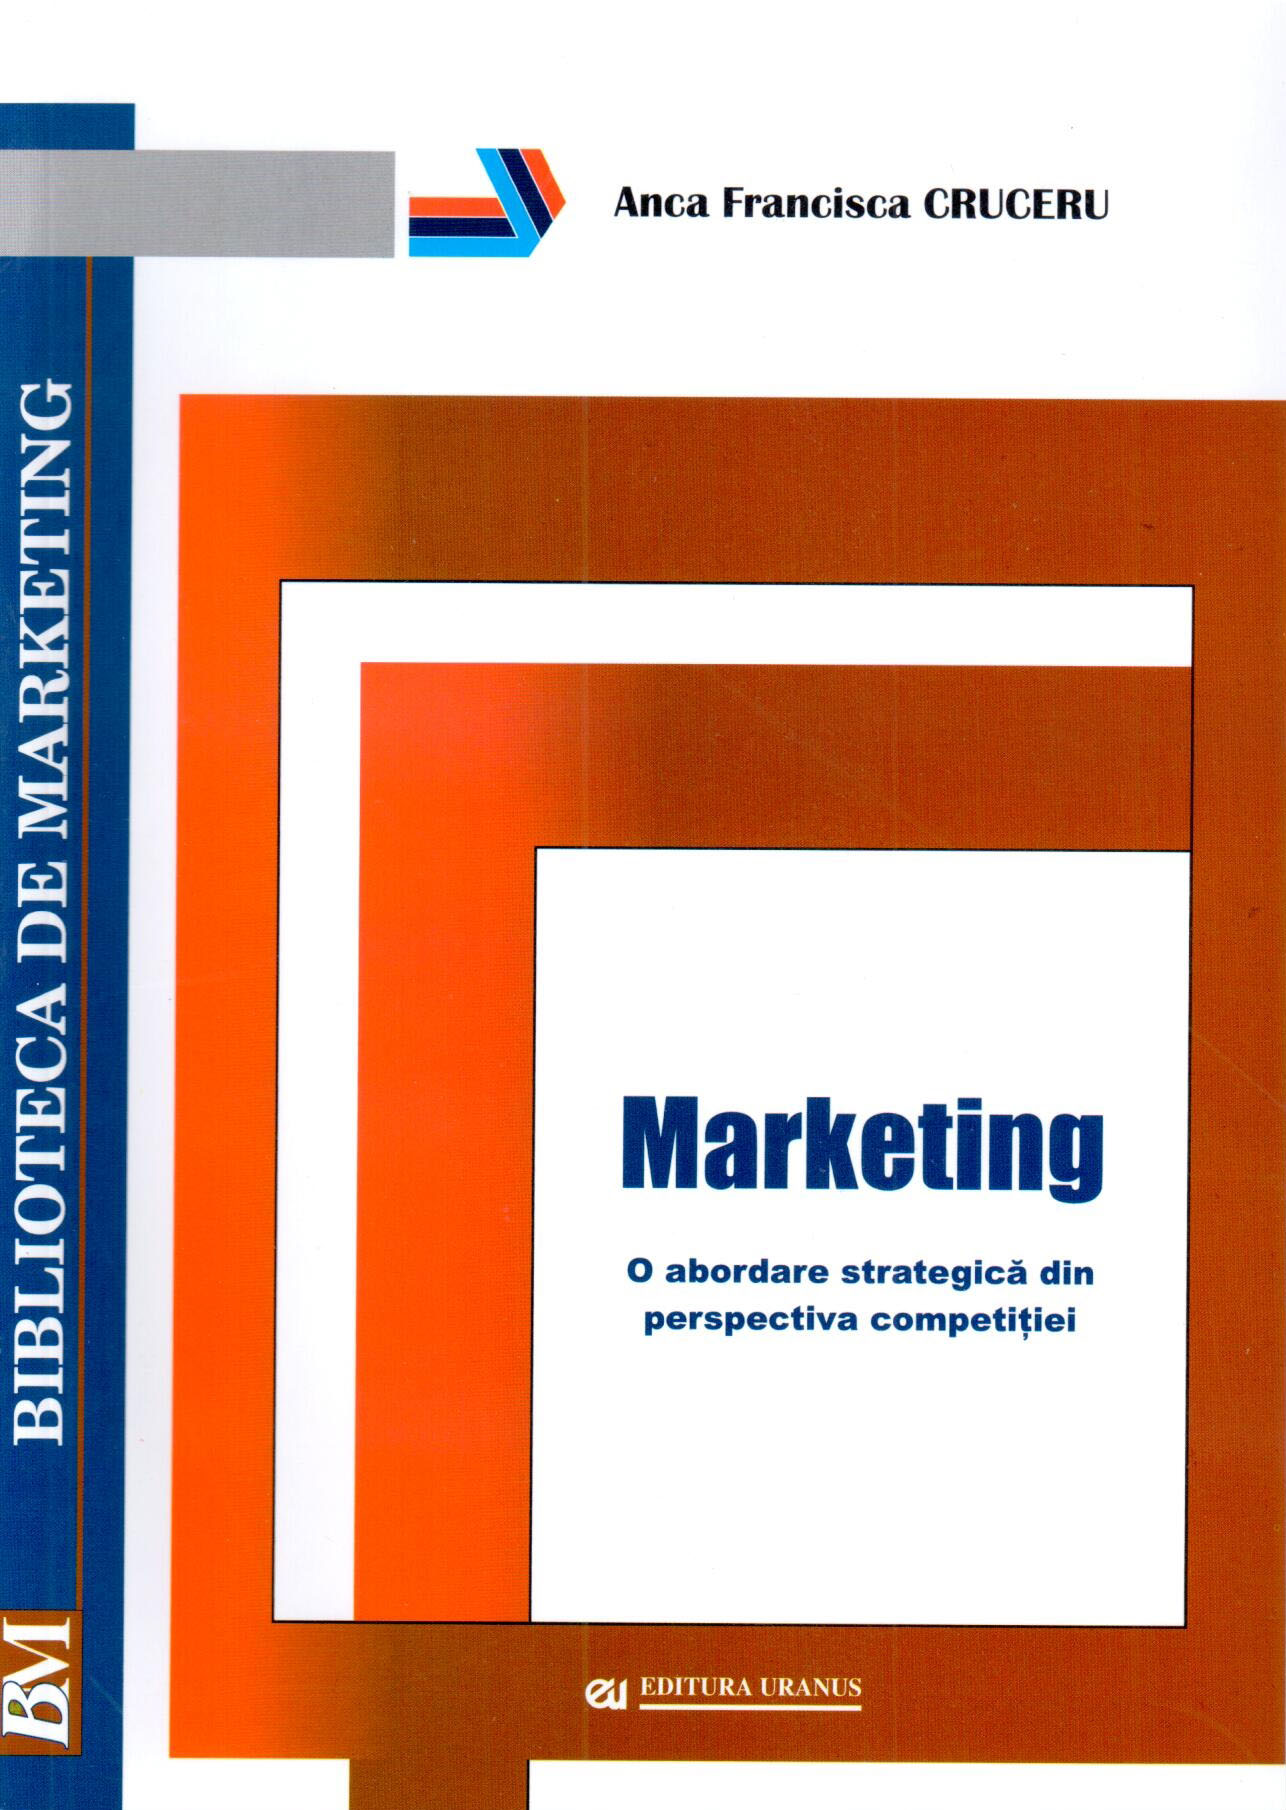 PDF Marketing | Anca Francisca Cruceru carturesti.ro Carte